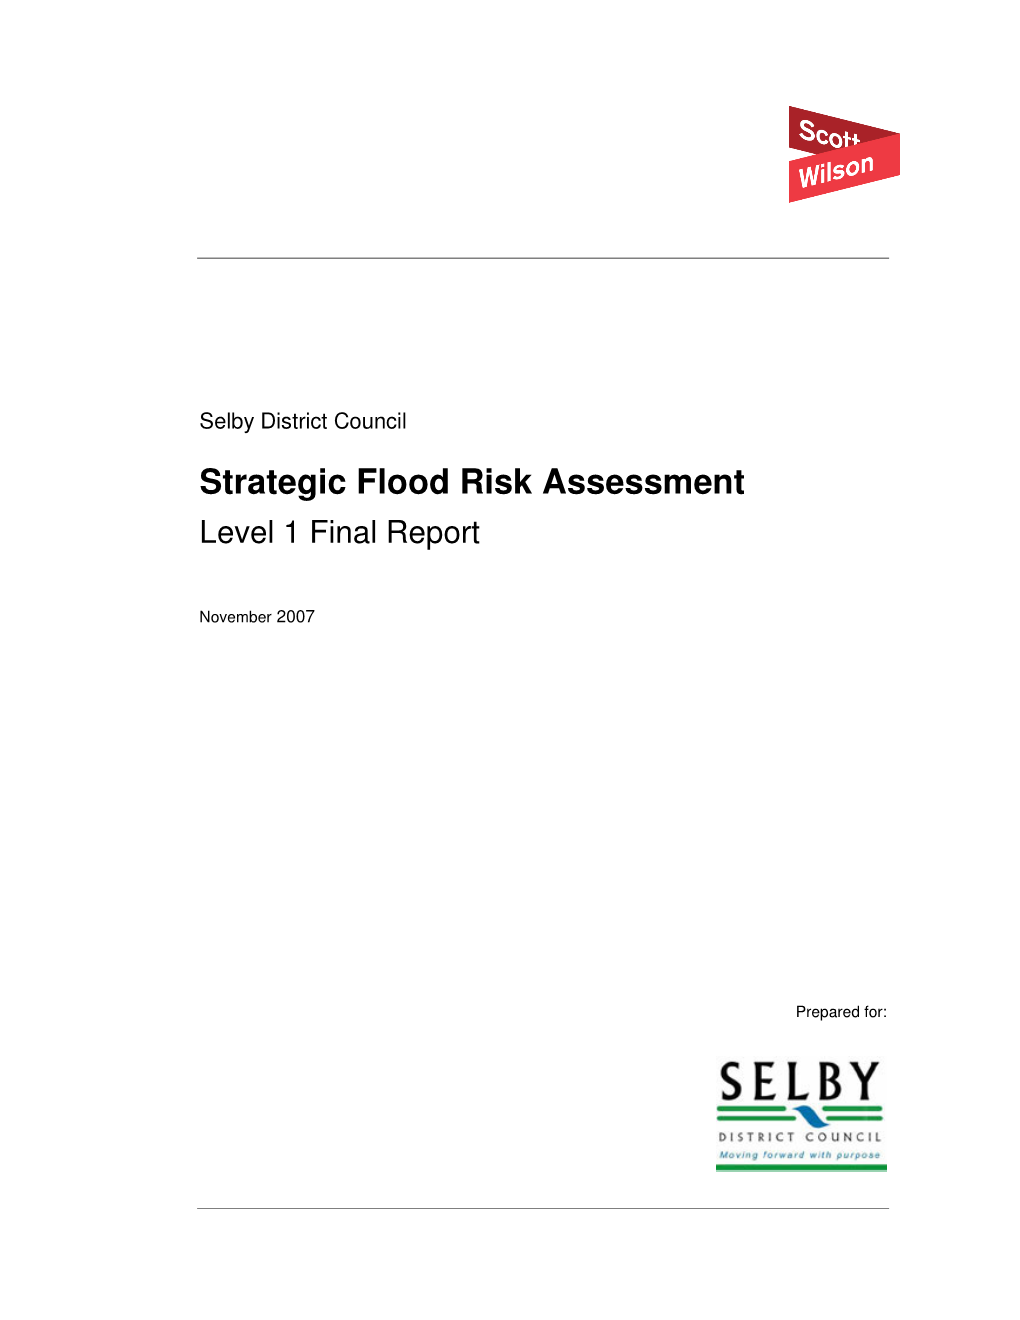 Strategic Flood Risk Assessment Level 1 Final Report